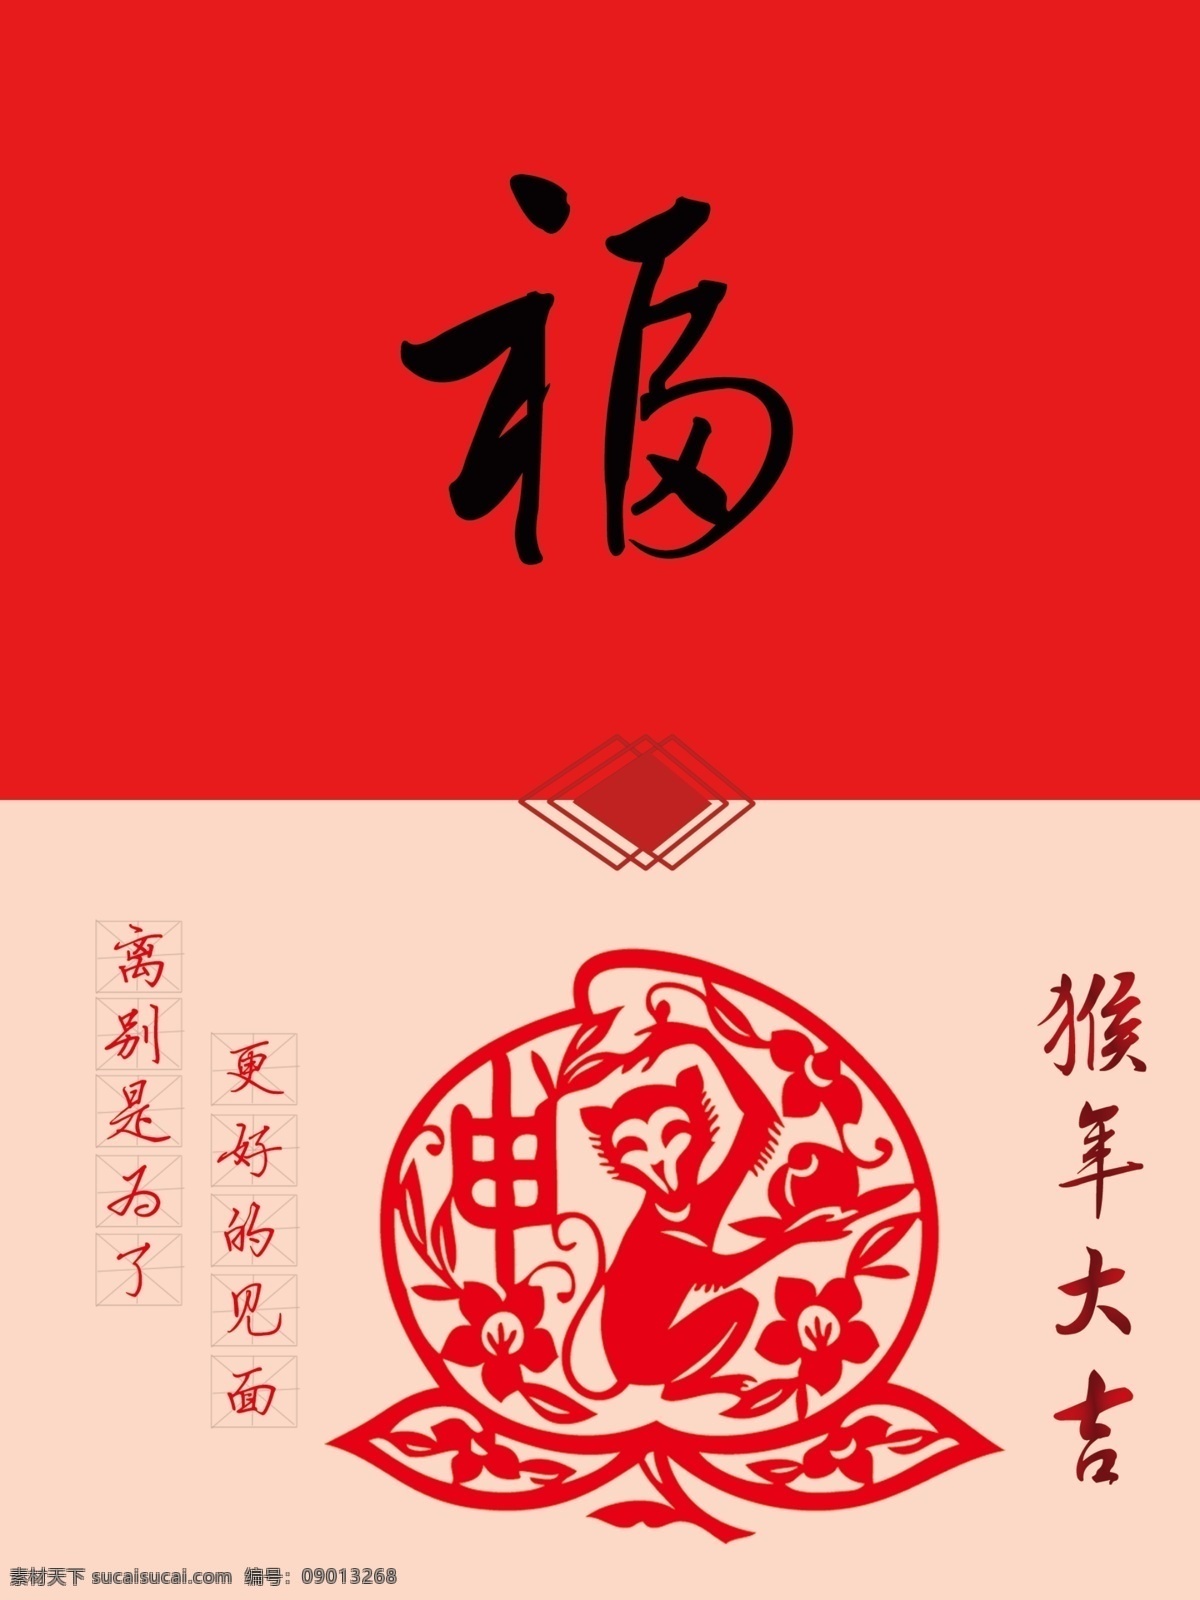 新年贺卡 贺卡 新年 送人 猴年 红色 福 中国候 文化艺术 节日庆祝